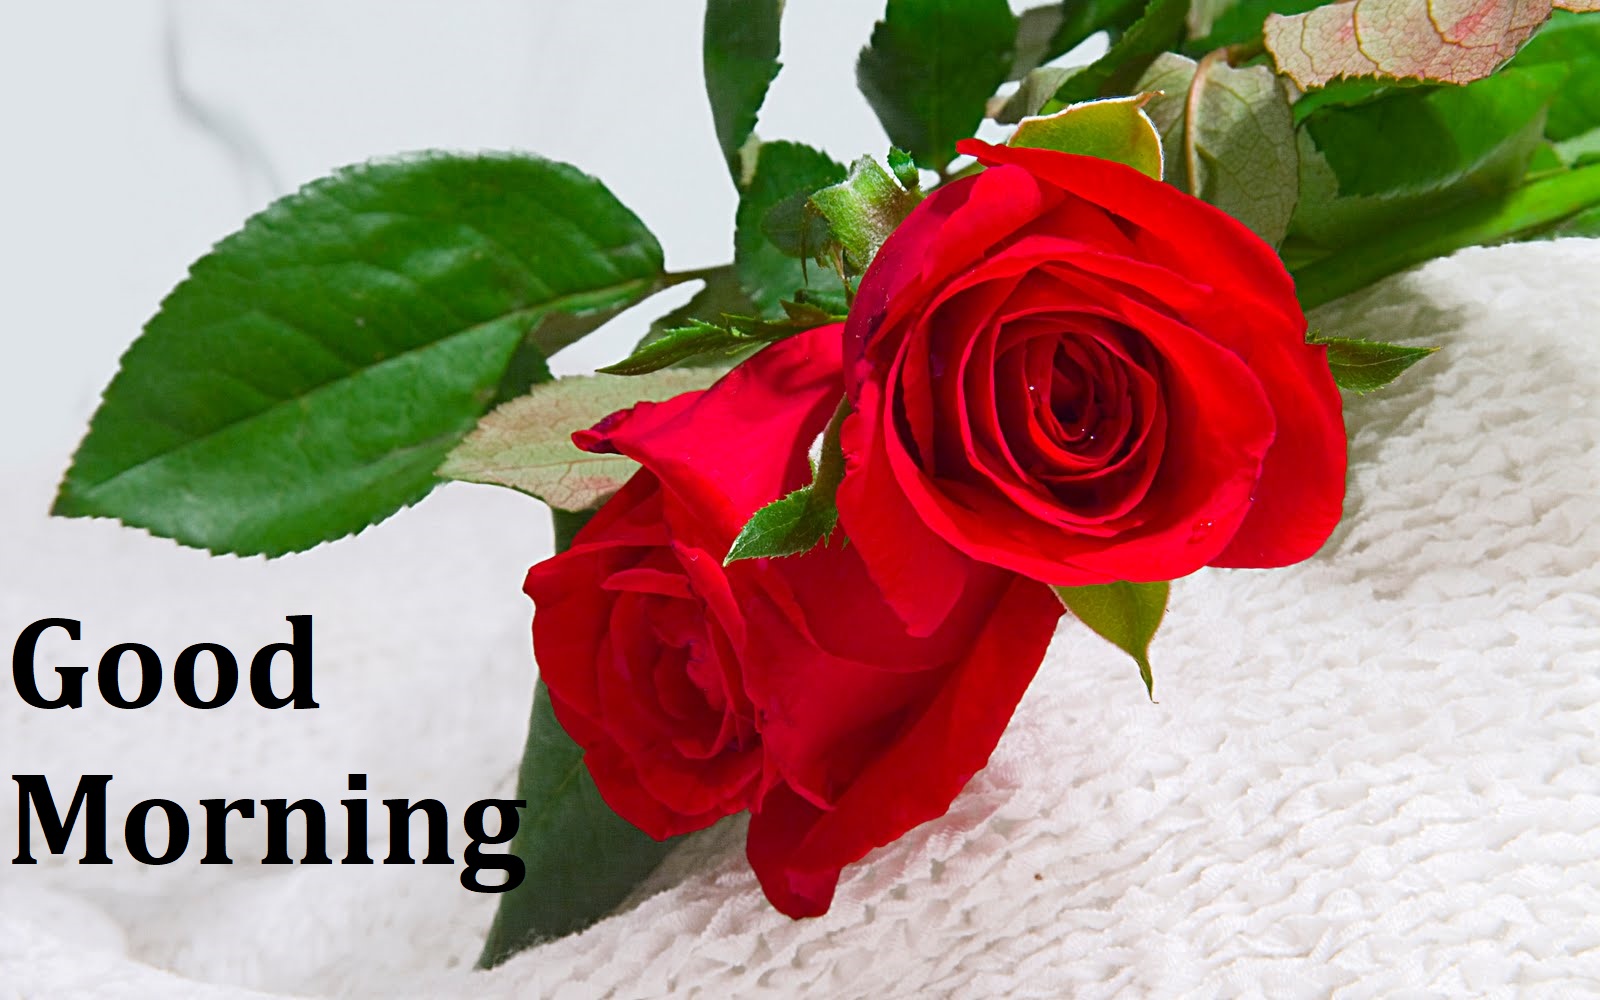 good morning wallpaper download,flower,garden roses,flowering plant,red,rose